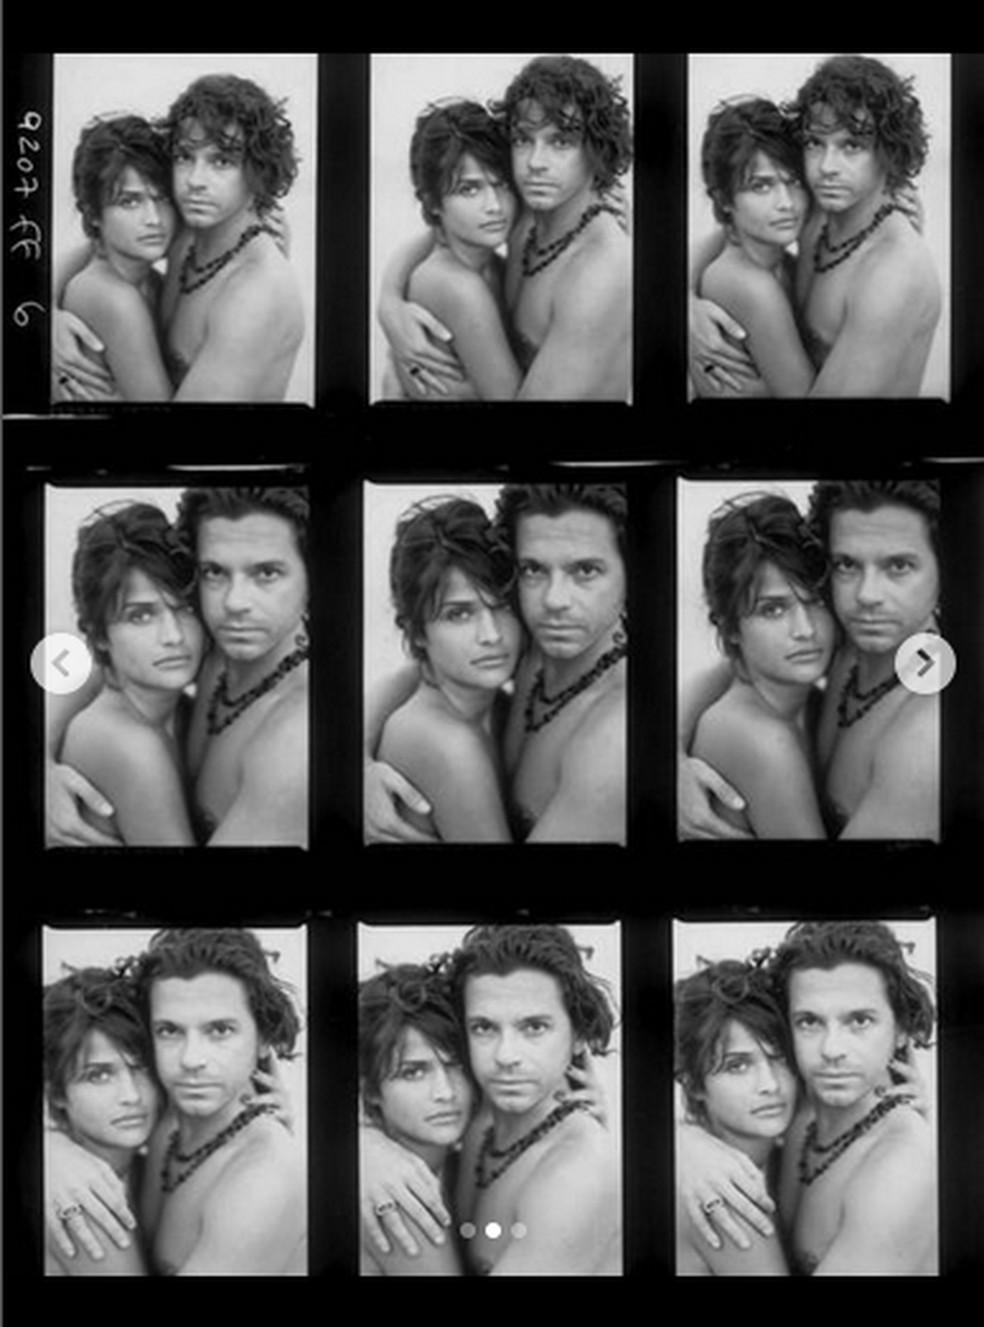 Helena Christensen e Michael Hutchence (1960-1997) em fotos antigas compartilhadas pela modelo nas redes sociais — Foto: Instagram